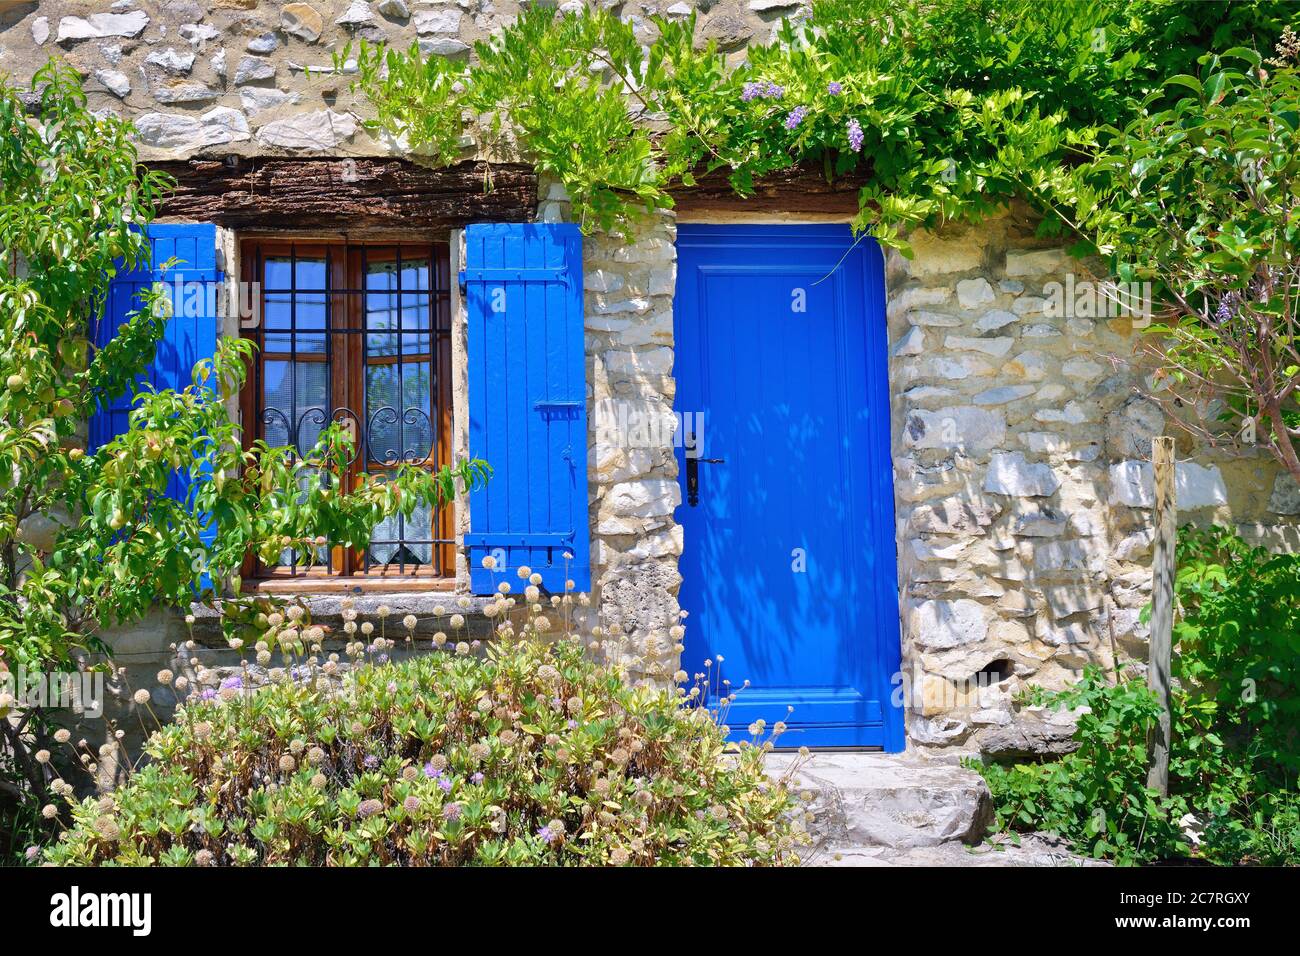 France, Provence. Maison typique ancienne, fenêtre ouverte avec les volets  bleus et porte bleue entourée d'une plante verte Photo Stock - Alamy